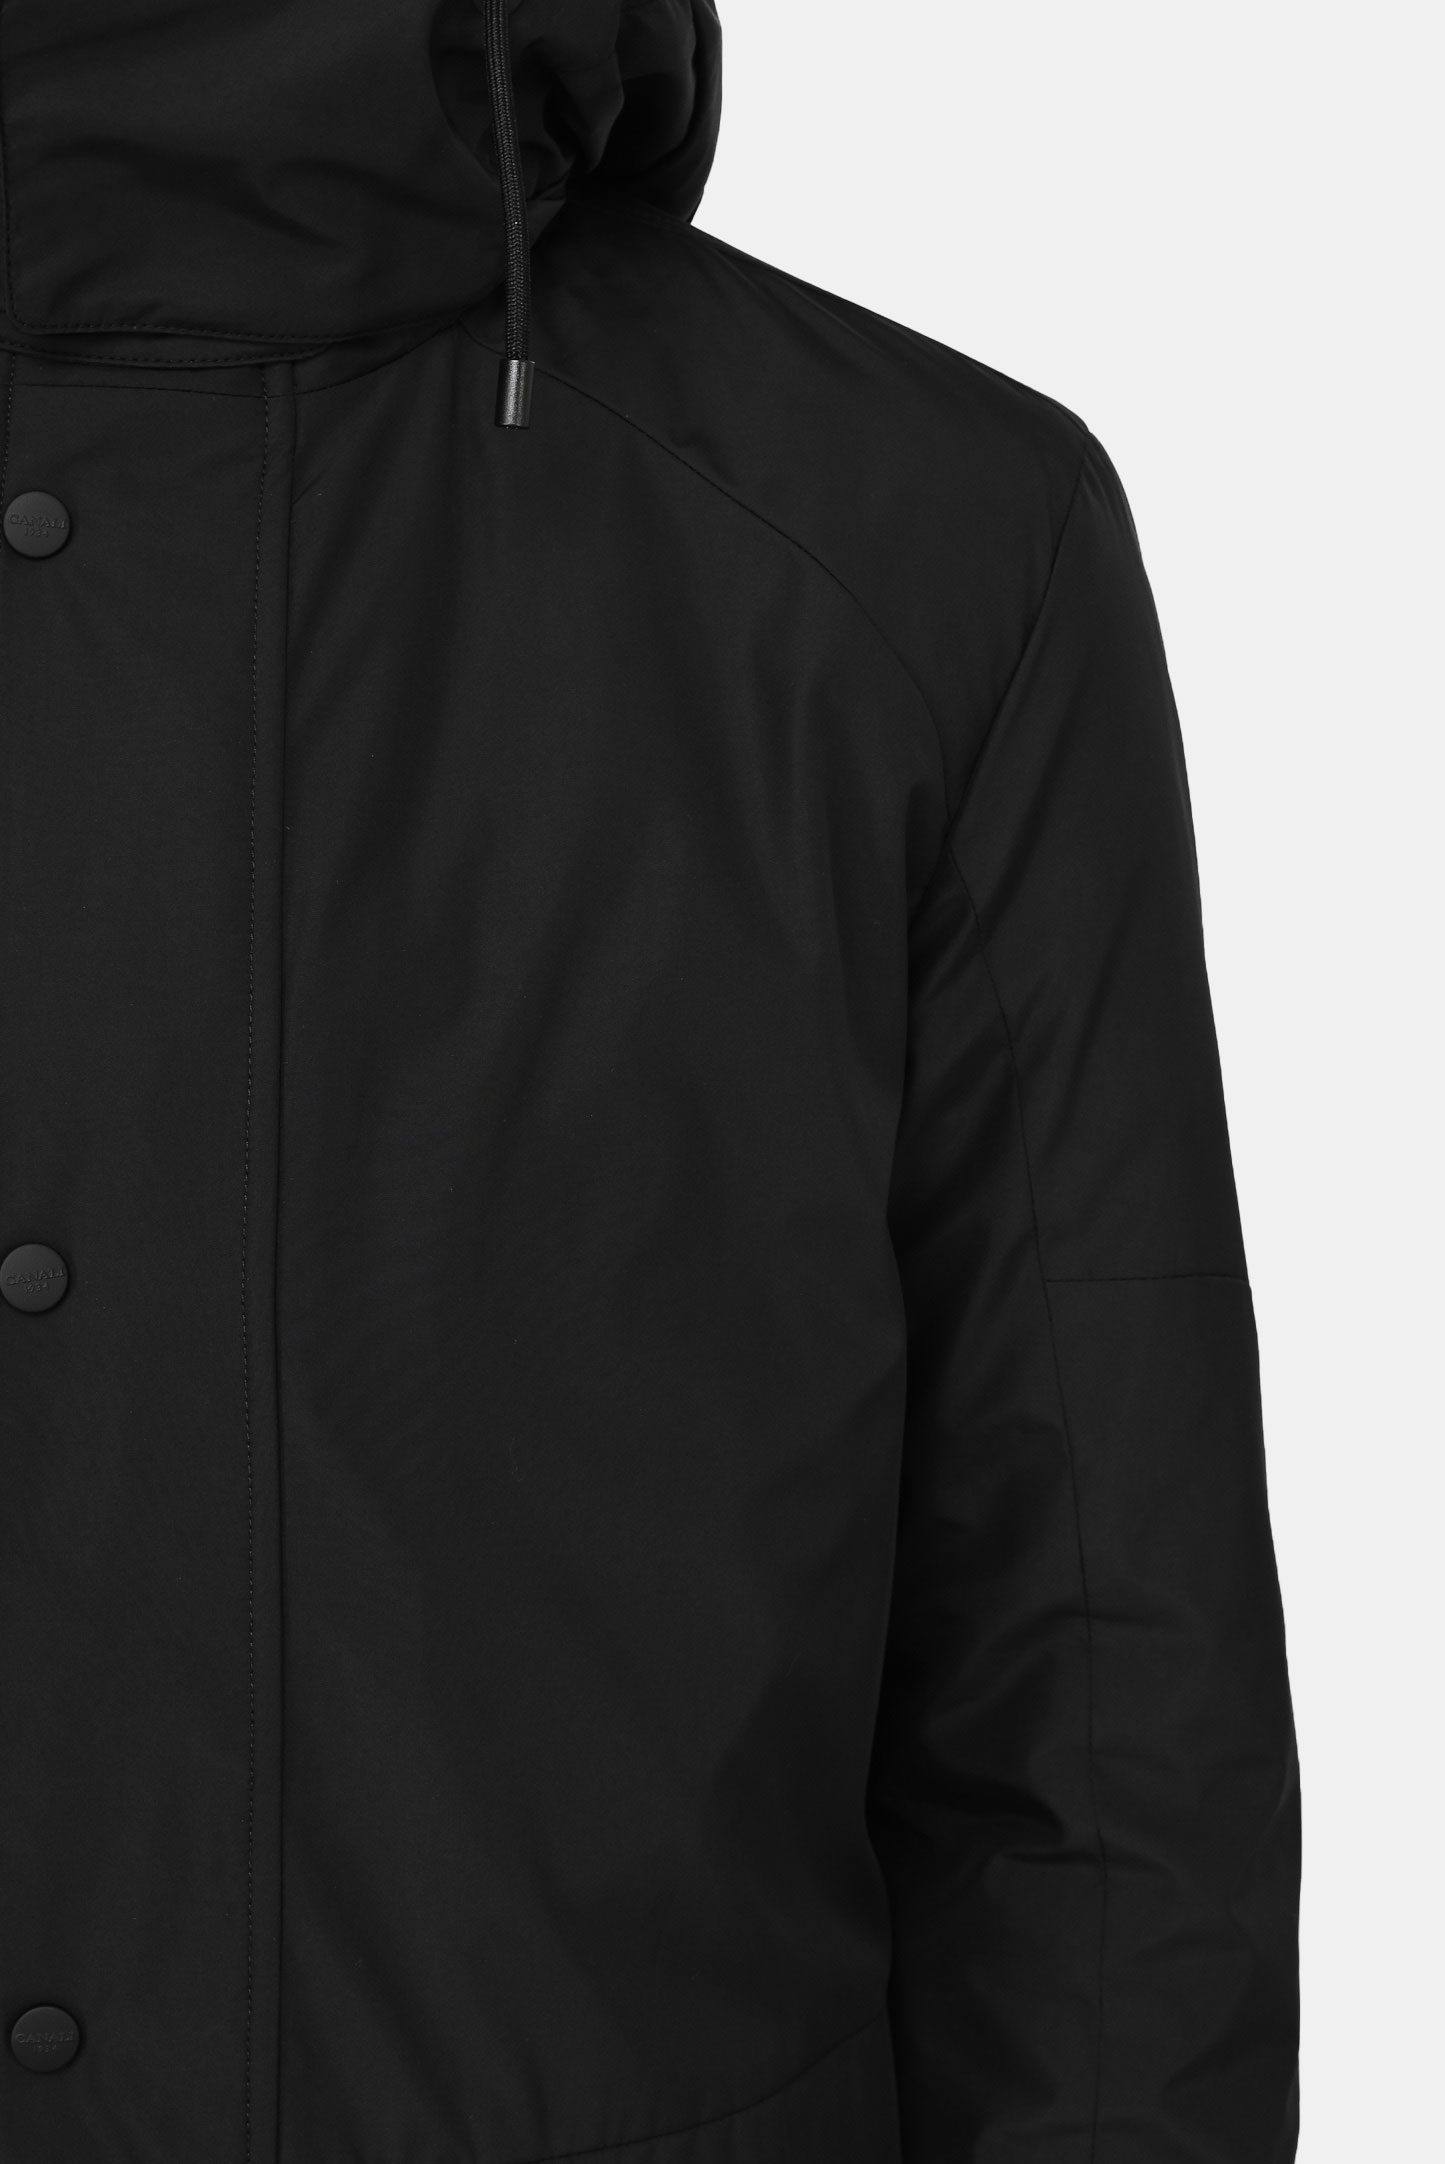 Куртка CANALI SY01788 O20312, цвет: Черный, Мужской